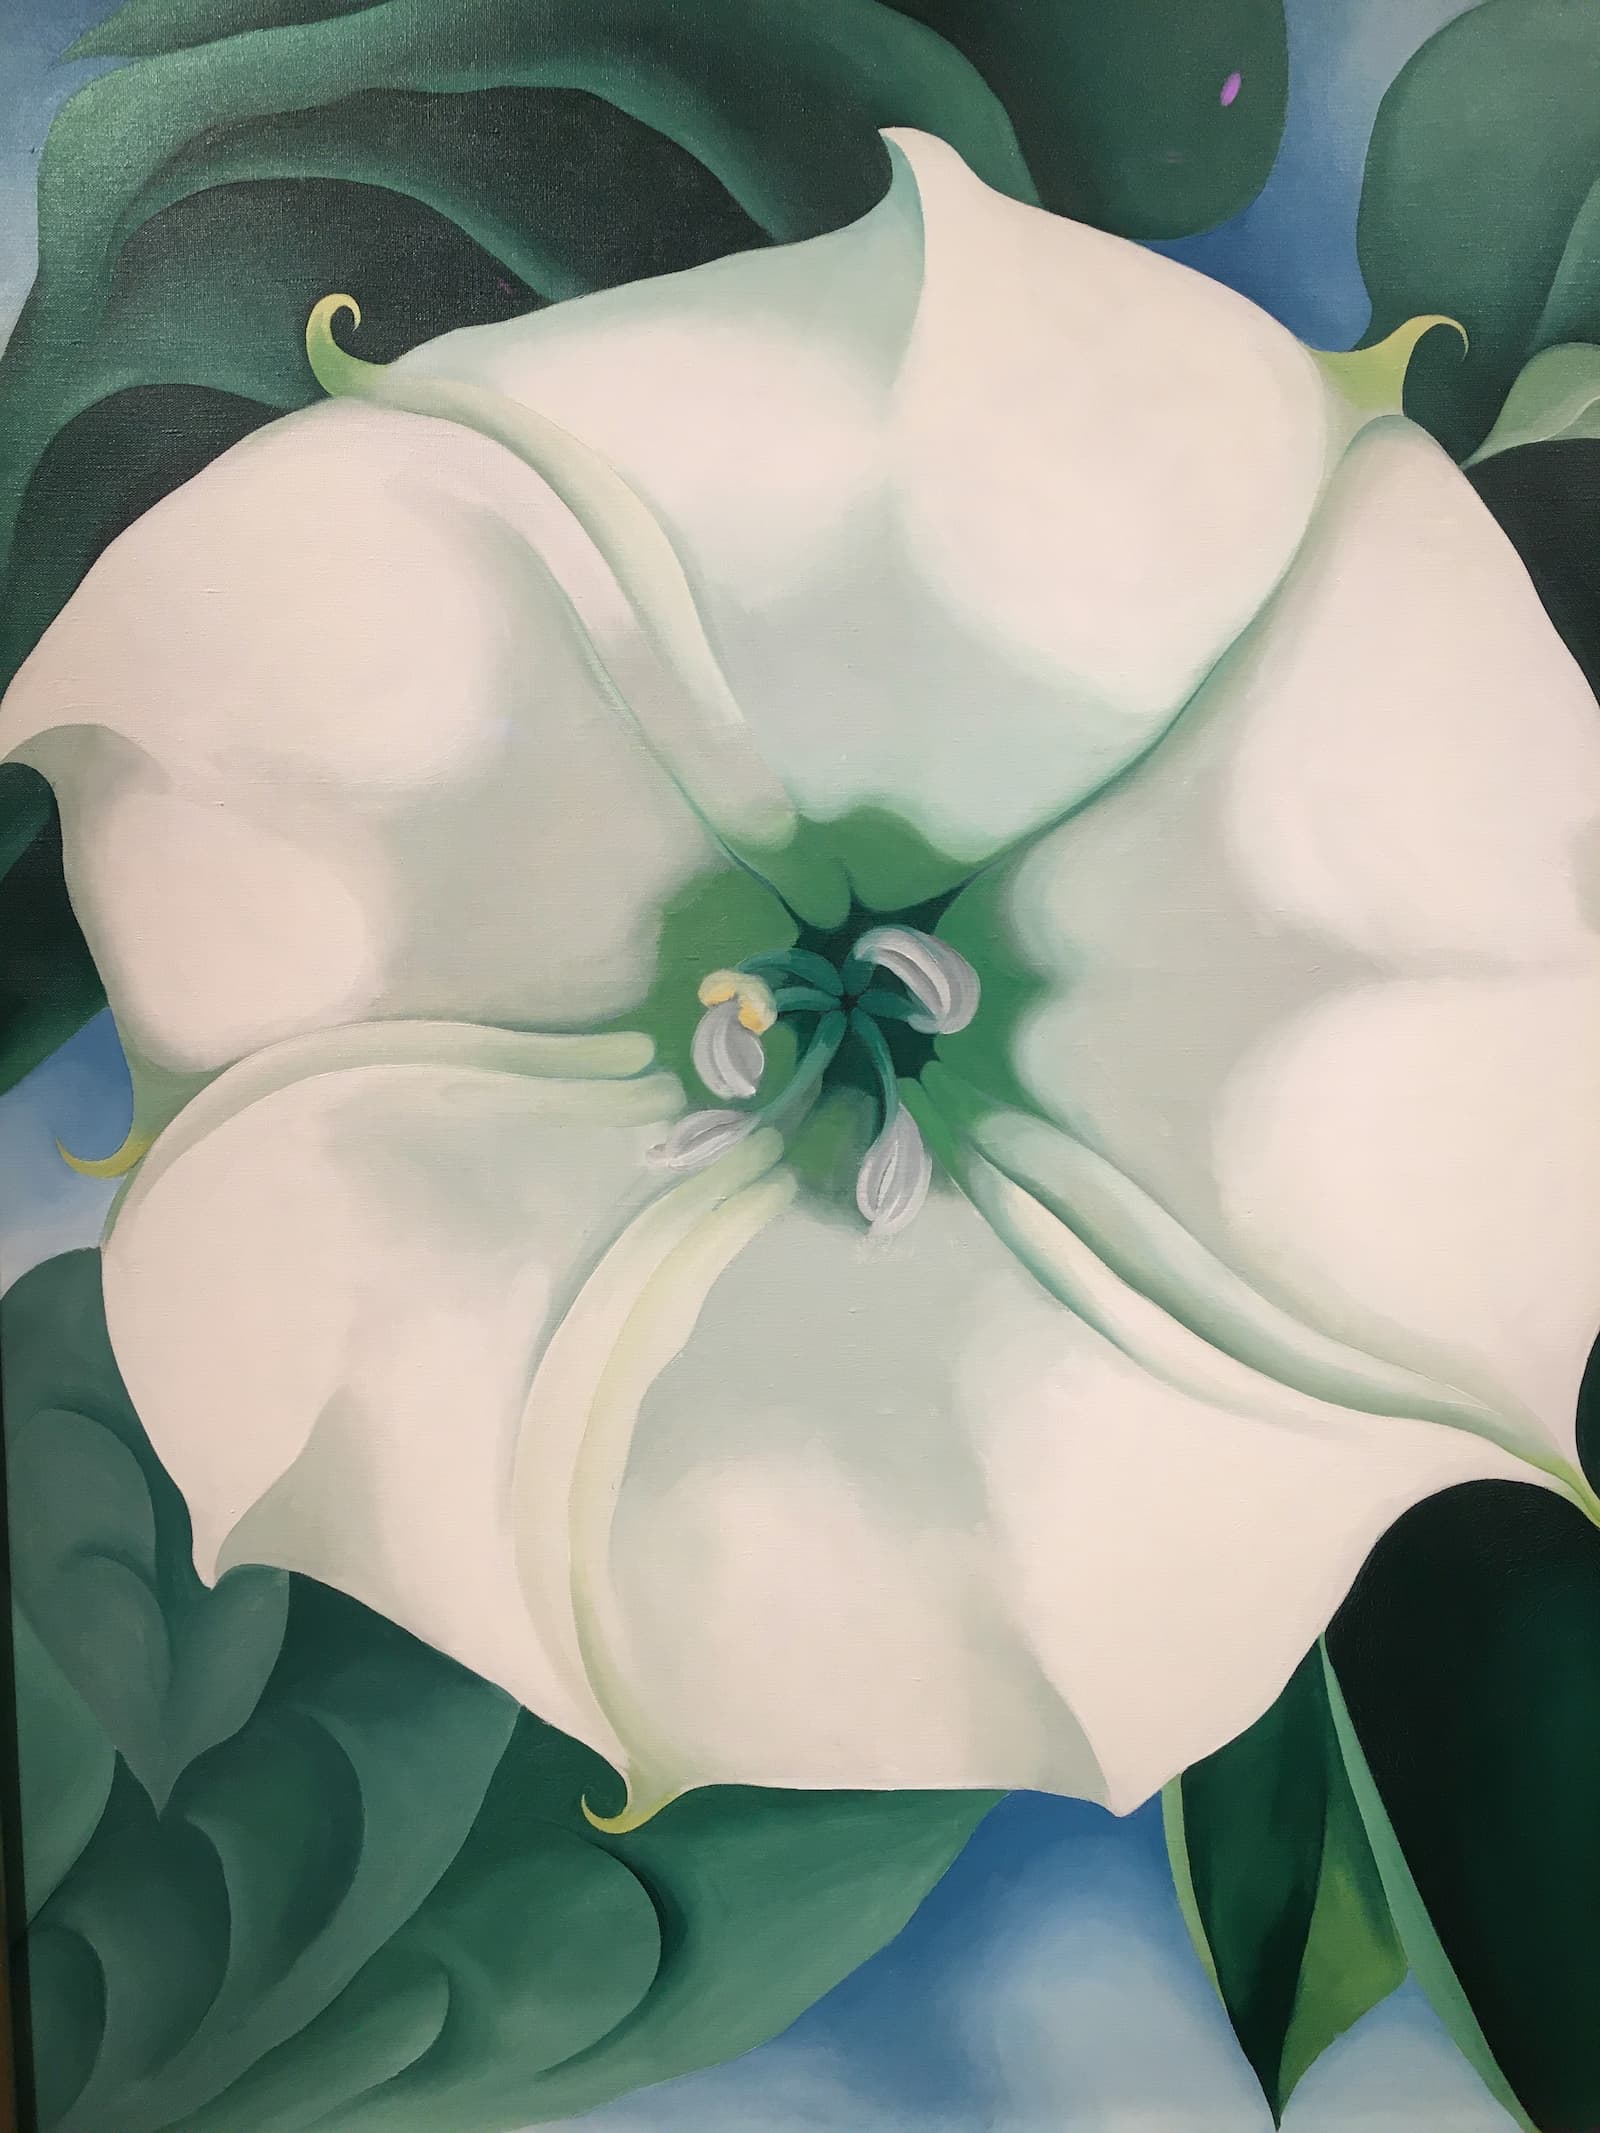 歐姬芙的巨大花卉作品《WHITE FLOWER》( 1932)。劇照／《沙漠中的花朵─歐姬芙》